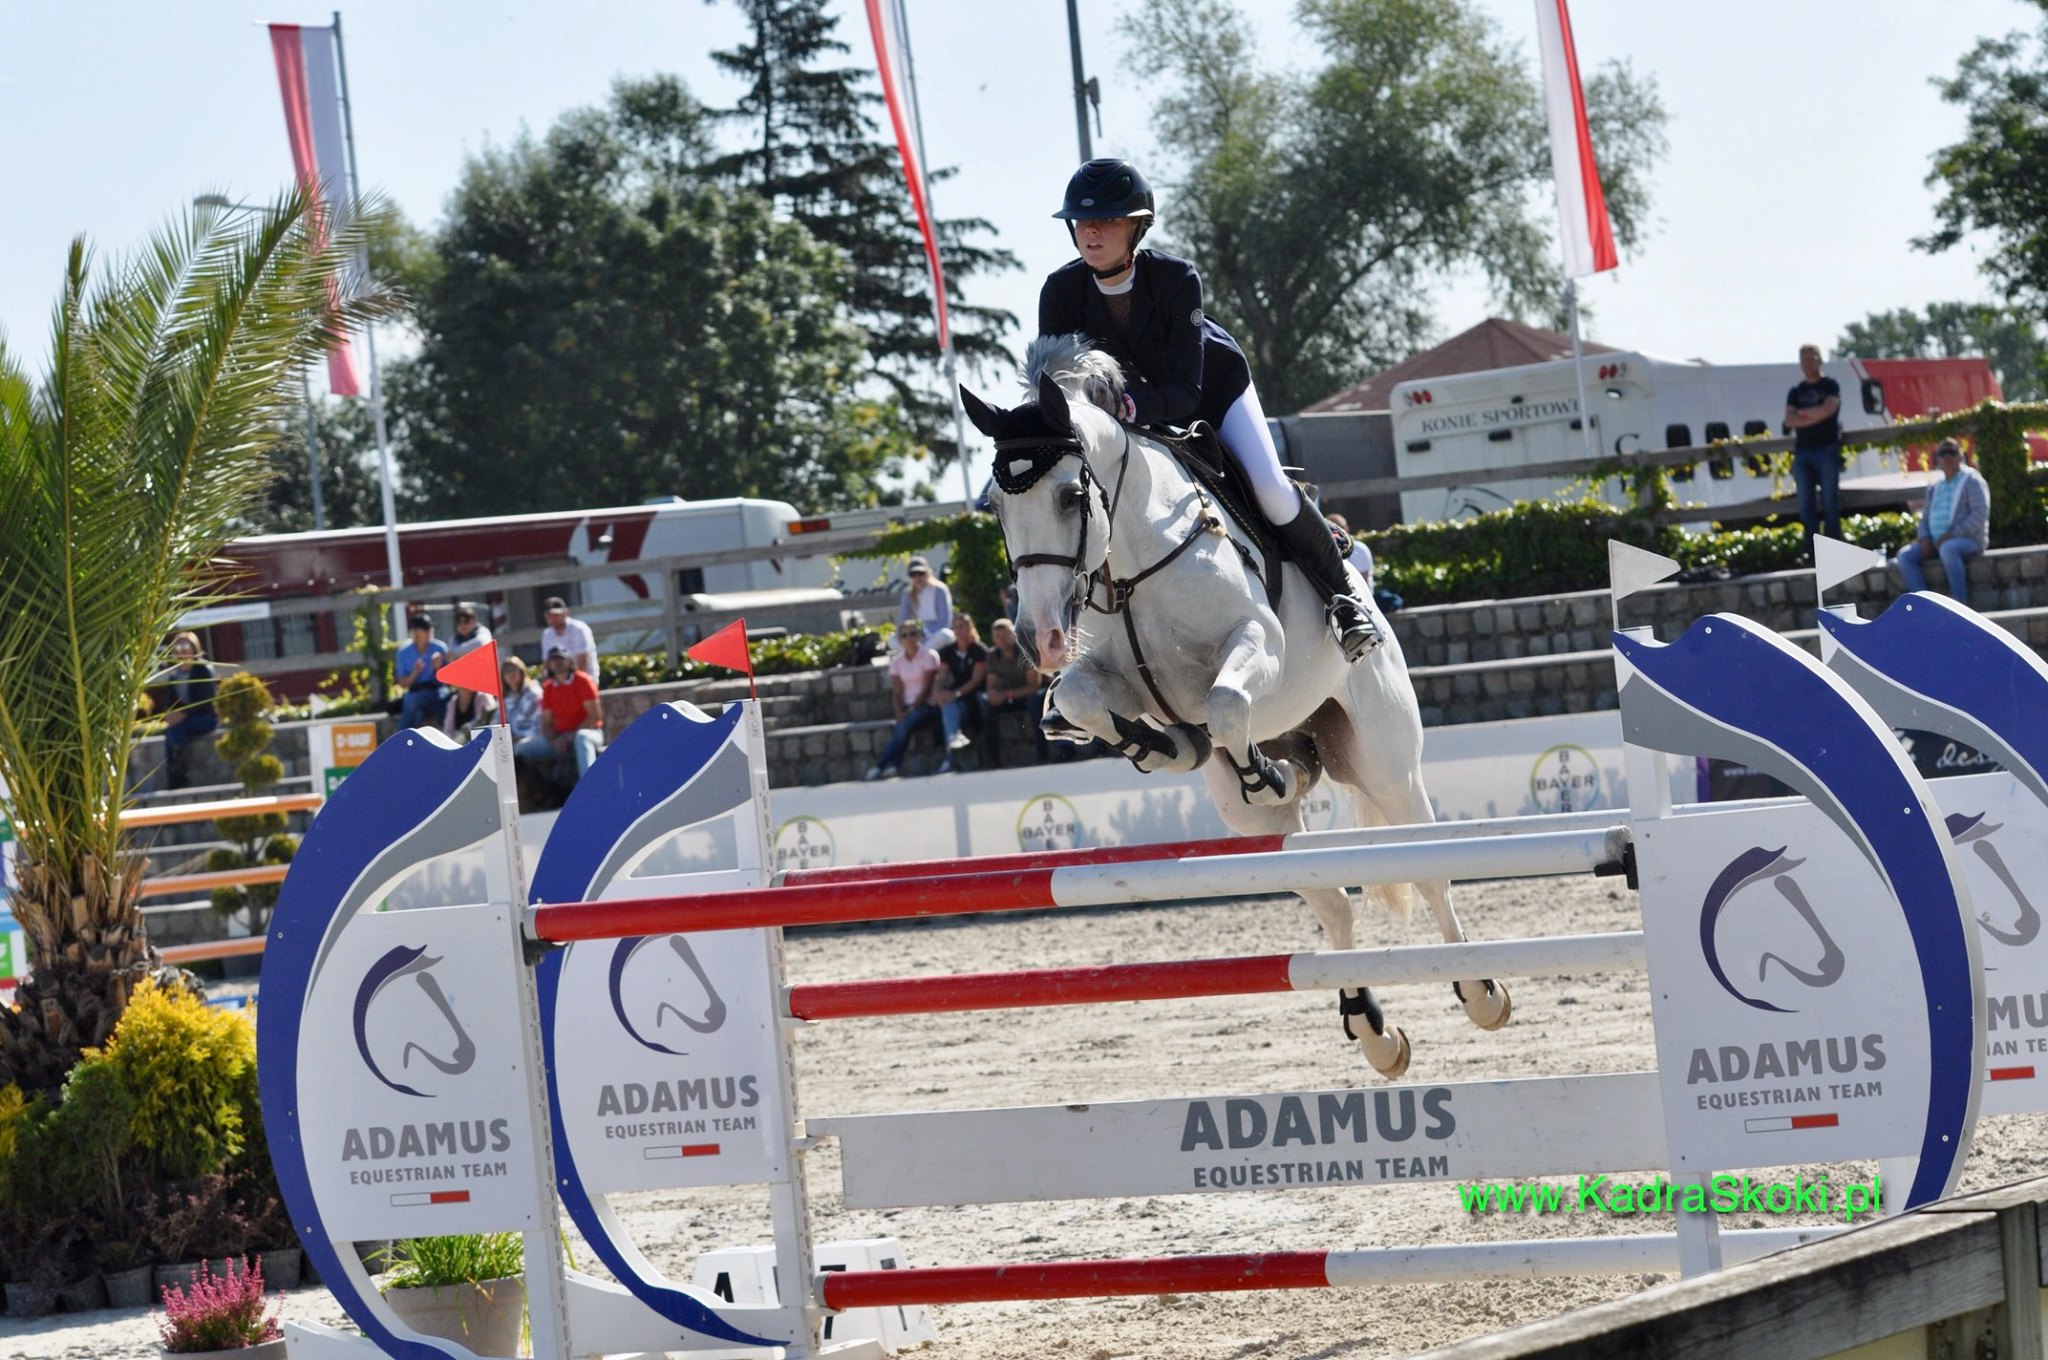 Jakubowice 2020 - Obstacle of Adamus Equestrian Team